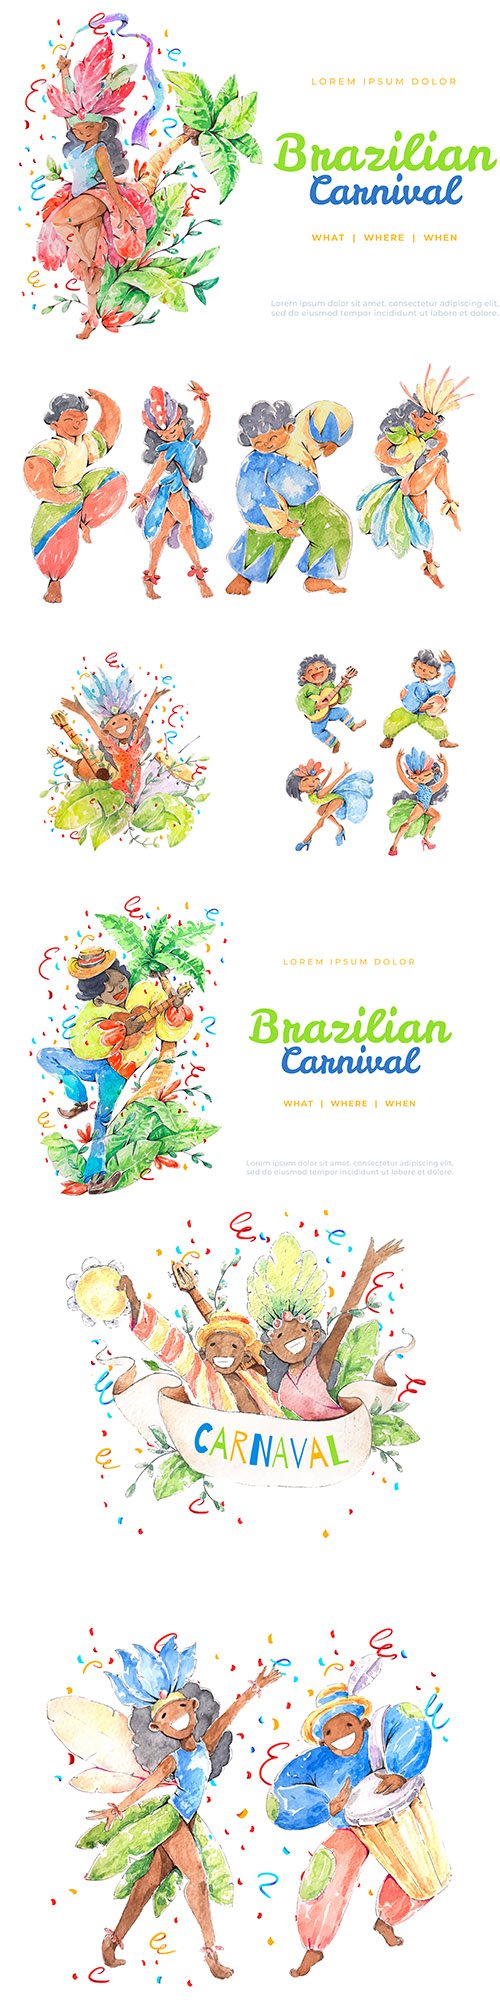 Brazilian carnival dancing watercolor illustrations